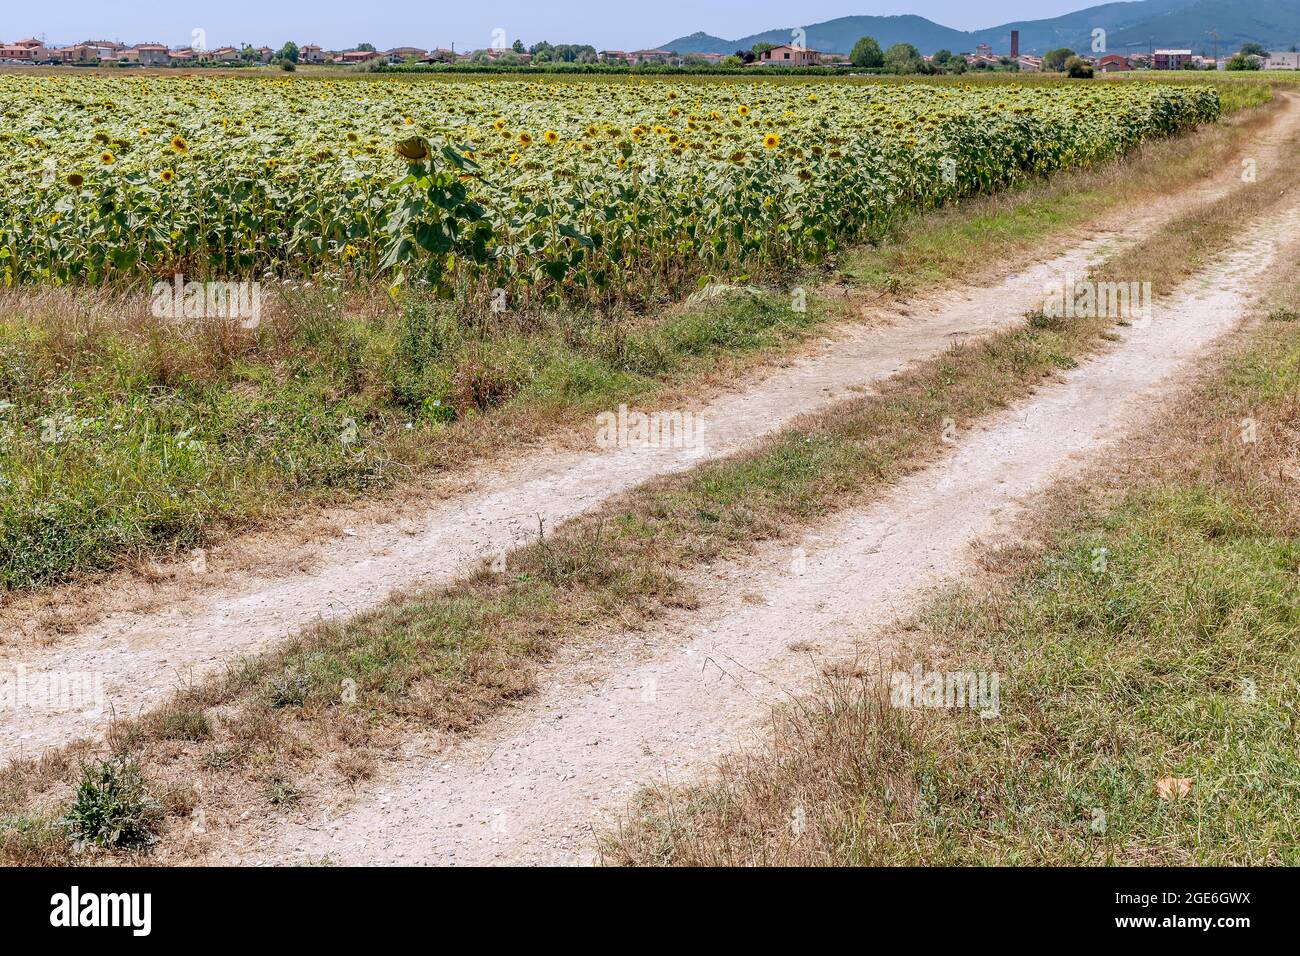 Una strada di campagna costeggia un campo di girasoli con il terreno costellato da una prolungata siccità e Bientina, in Italia, sullo sfondo Foto Stock